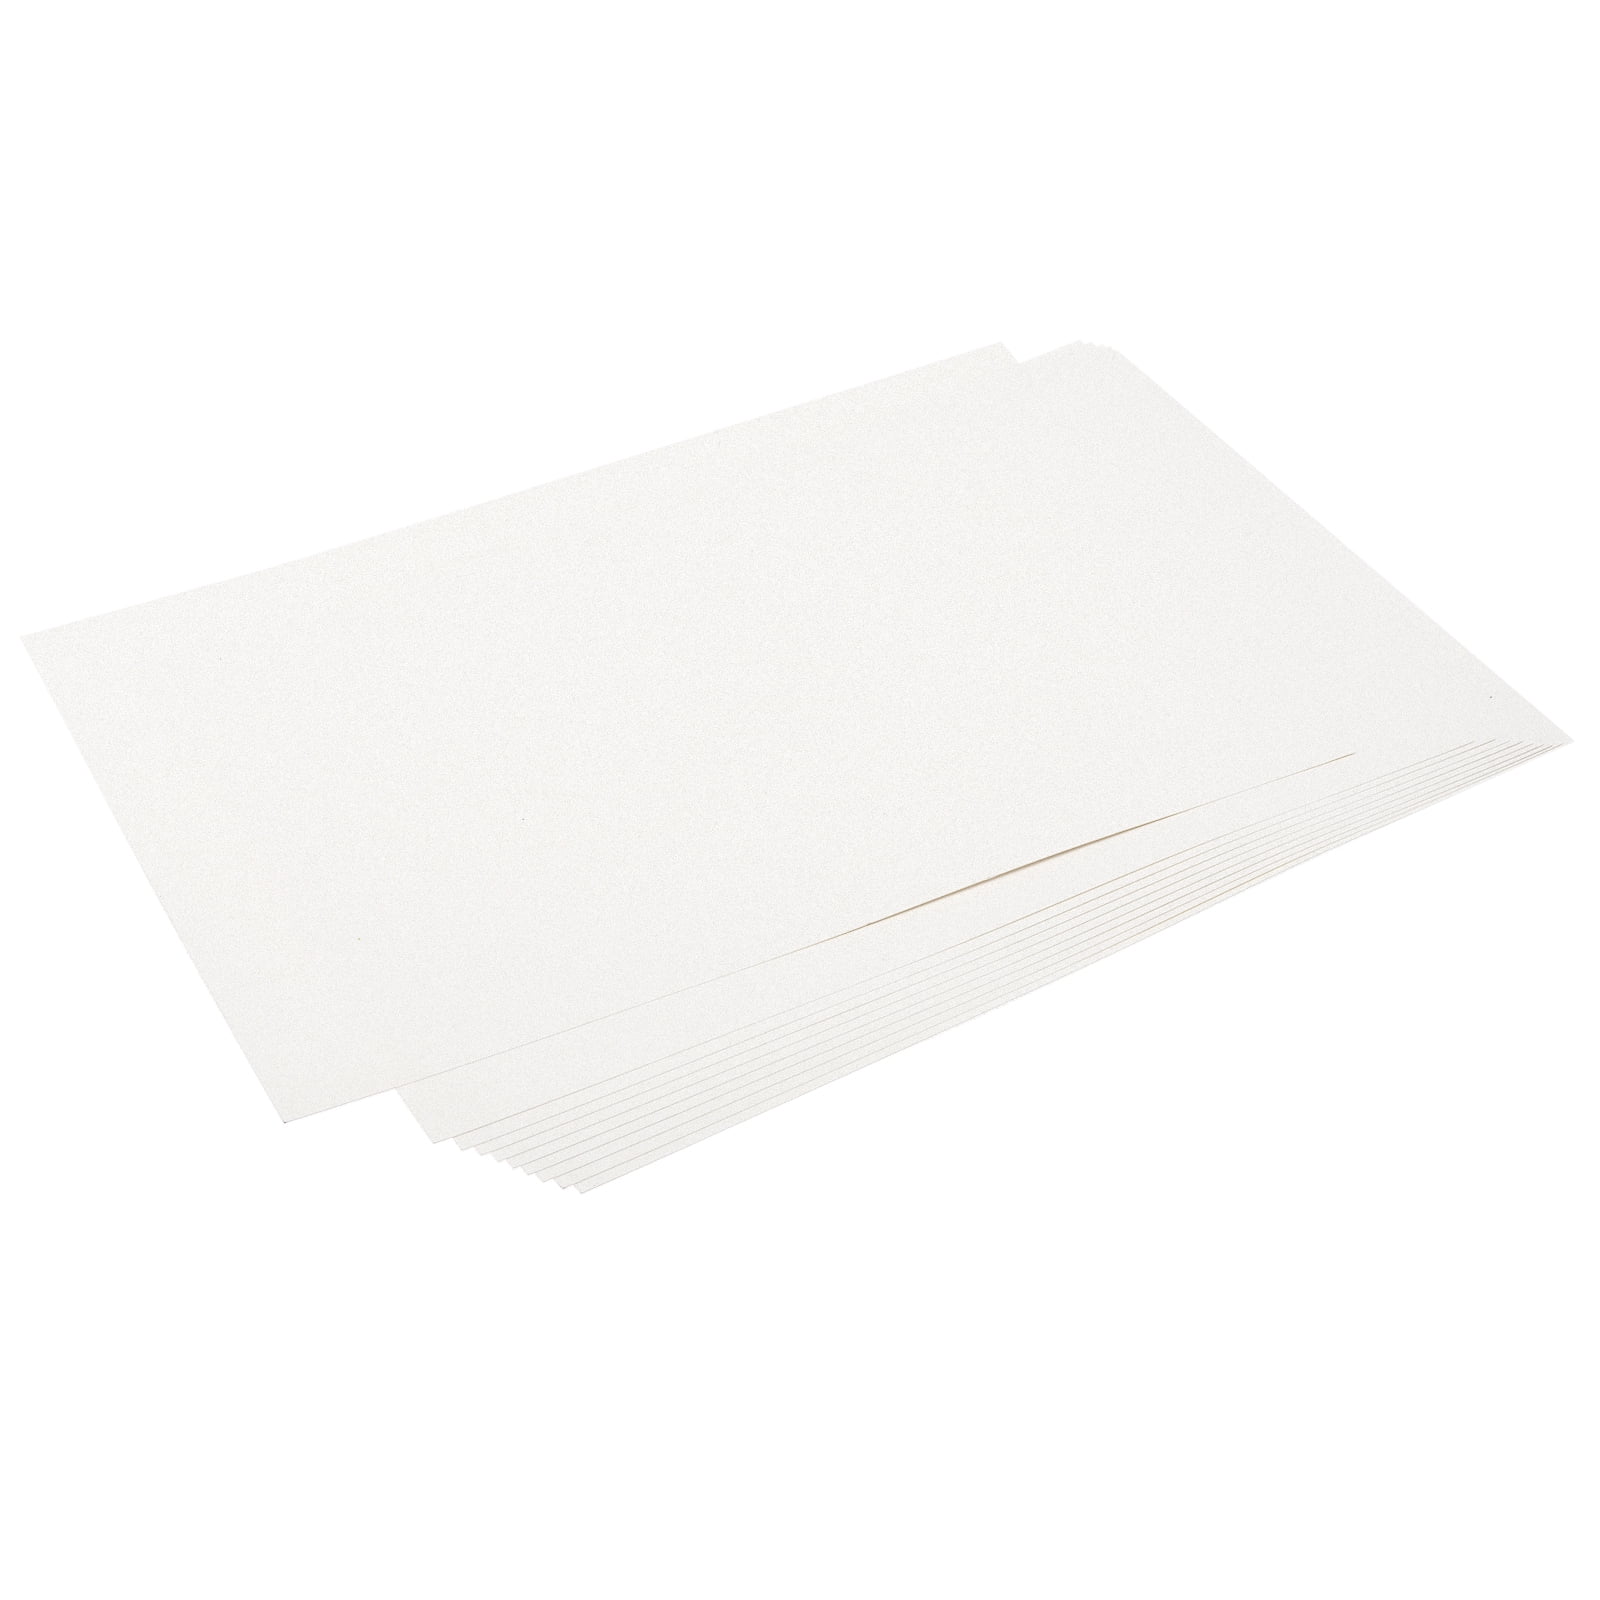 Jam Paper Matte Cardstock - 8.5 x 11 - 130lb Tan - 25 Sheets/Pack